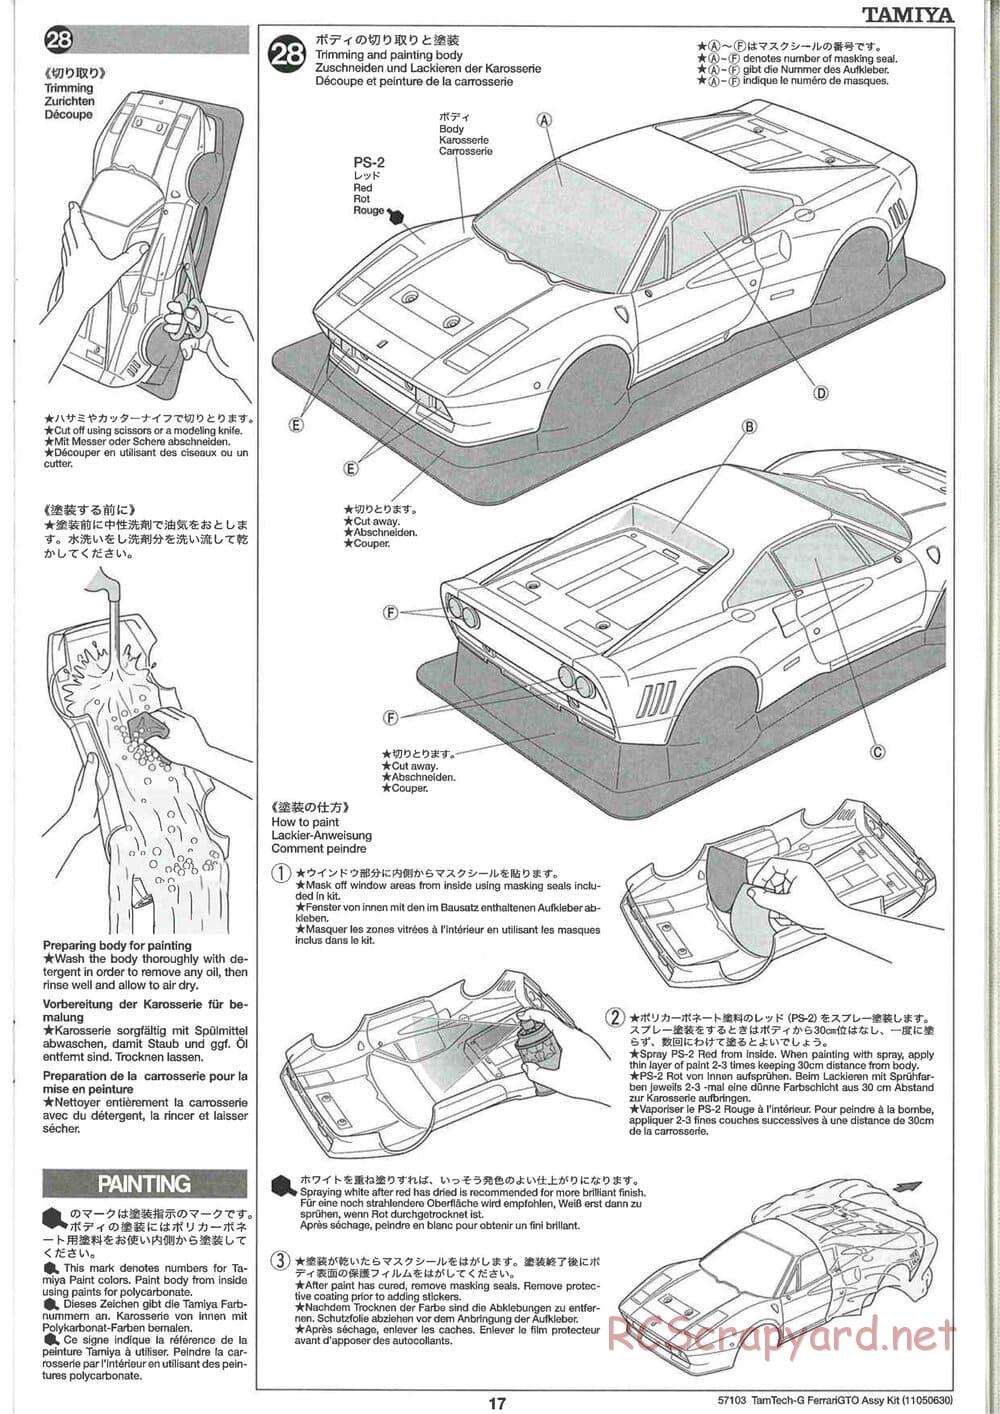 Tamiya - Ferrari 288 GTO - GT-01 Chassis - Manual - Page 17